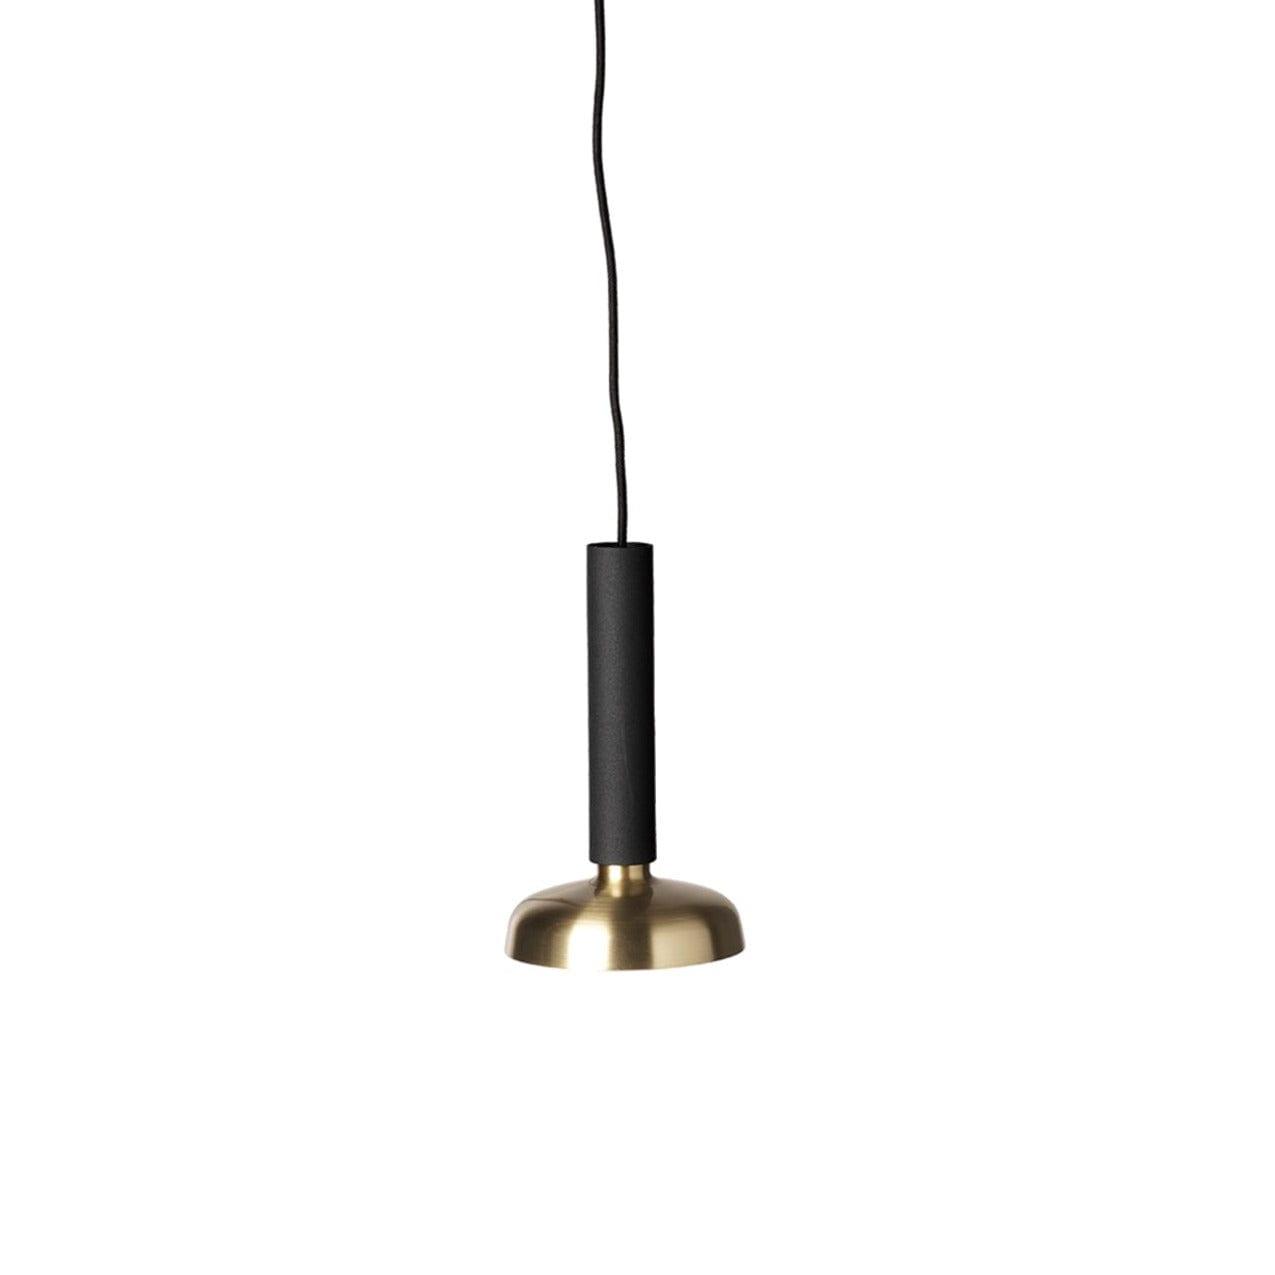 Lampa wisząca BLEND czarny z mosiężnym wykończeniem Pholc    Eye on Design